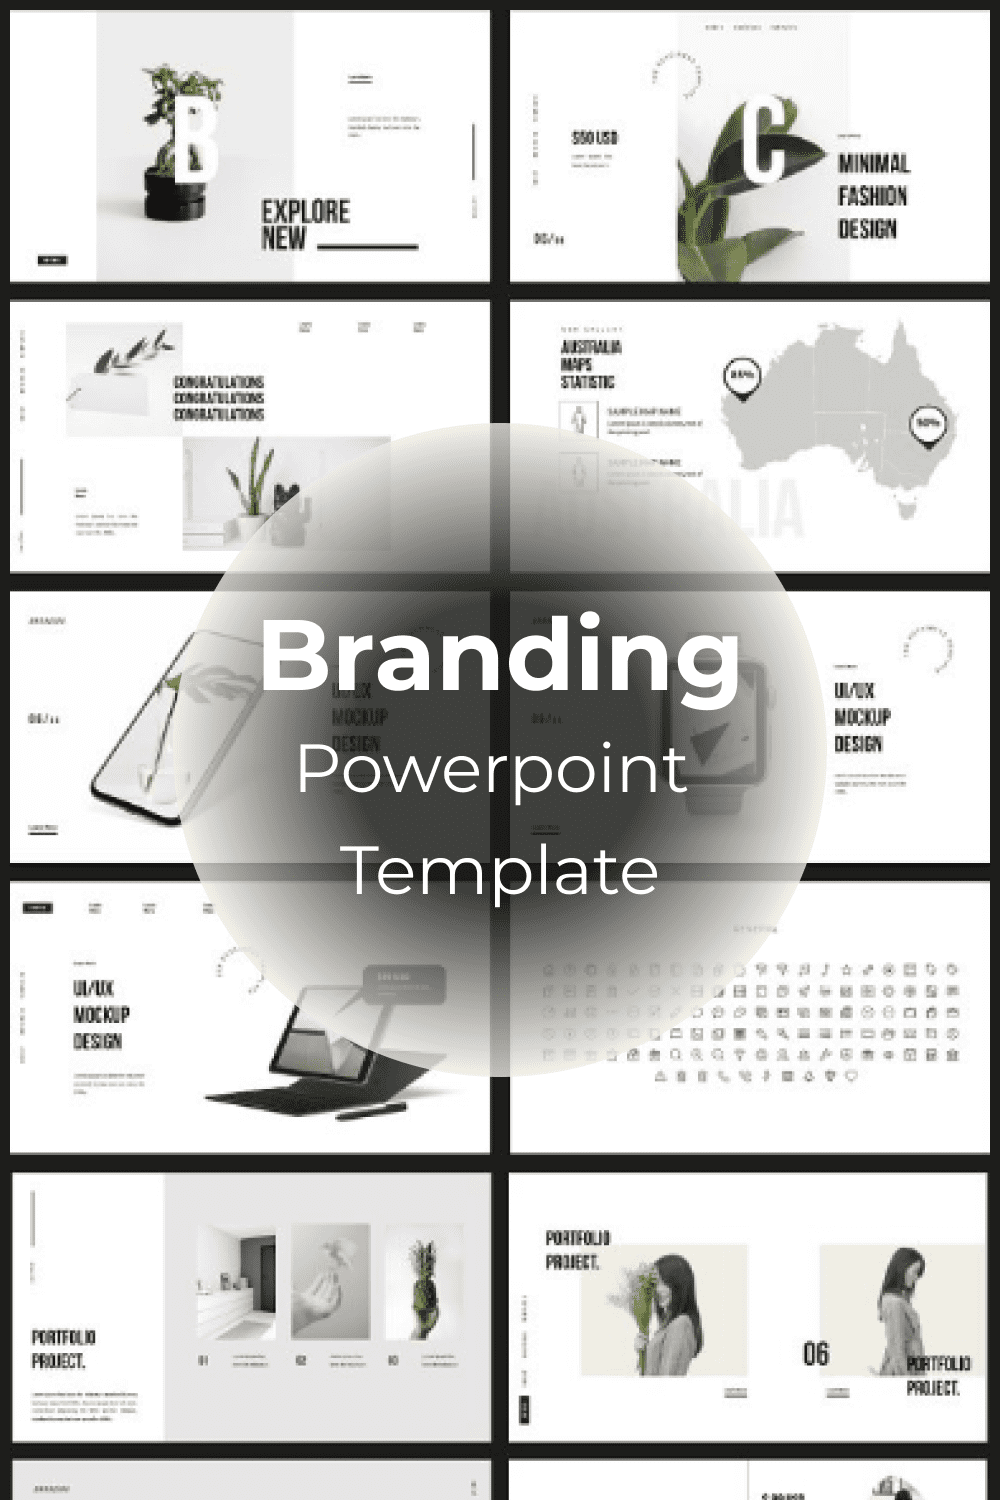 Branding Powerpoint Template pinterest.